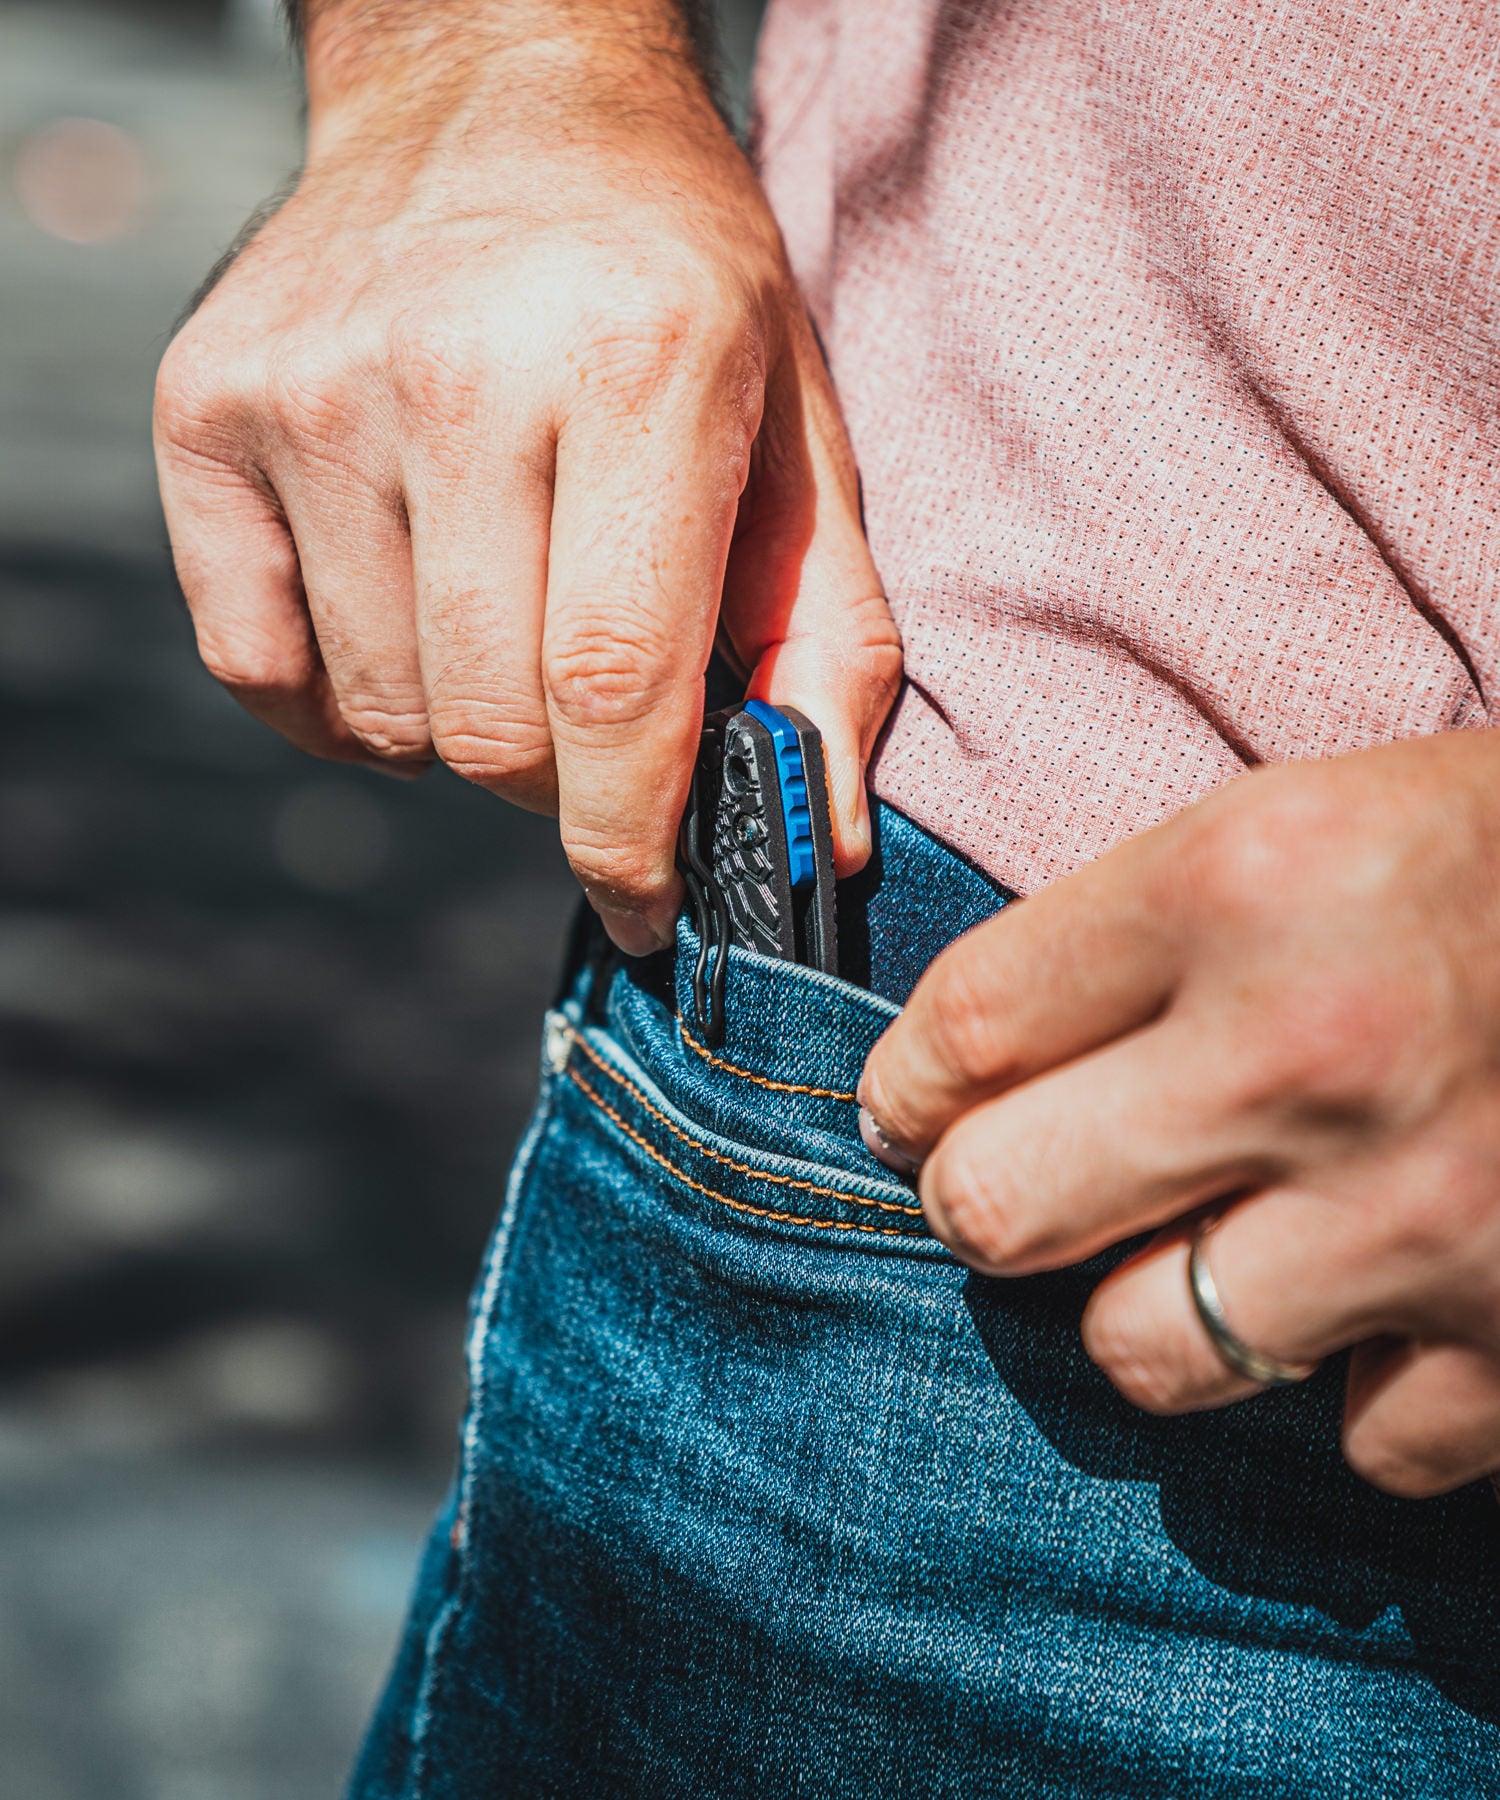 Paolo di backpacco estrae dalla tasca dei jeans 5.11 il fox baby core nero con distanziale in alluminio anodizzato blu